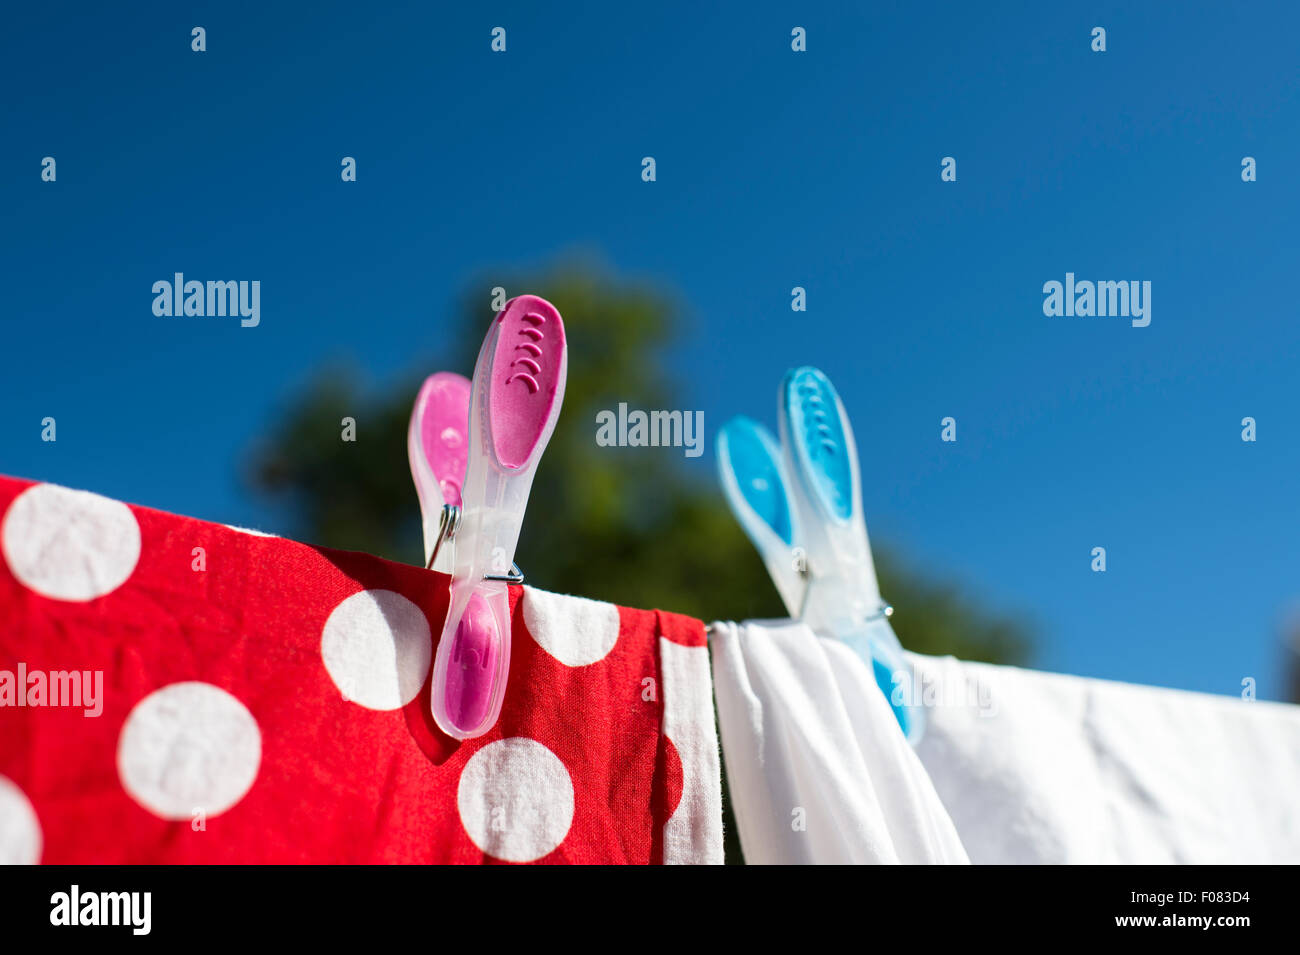 Rote und weiße Wäsche trocknen in der Sonne auf der Wäscheleine mit farbigen Stöpsel gekoppelt. Stockfoto